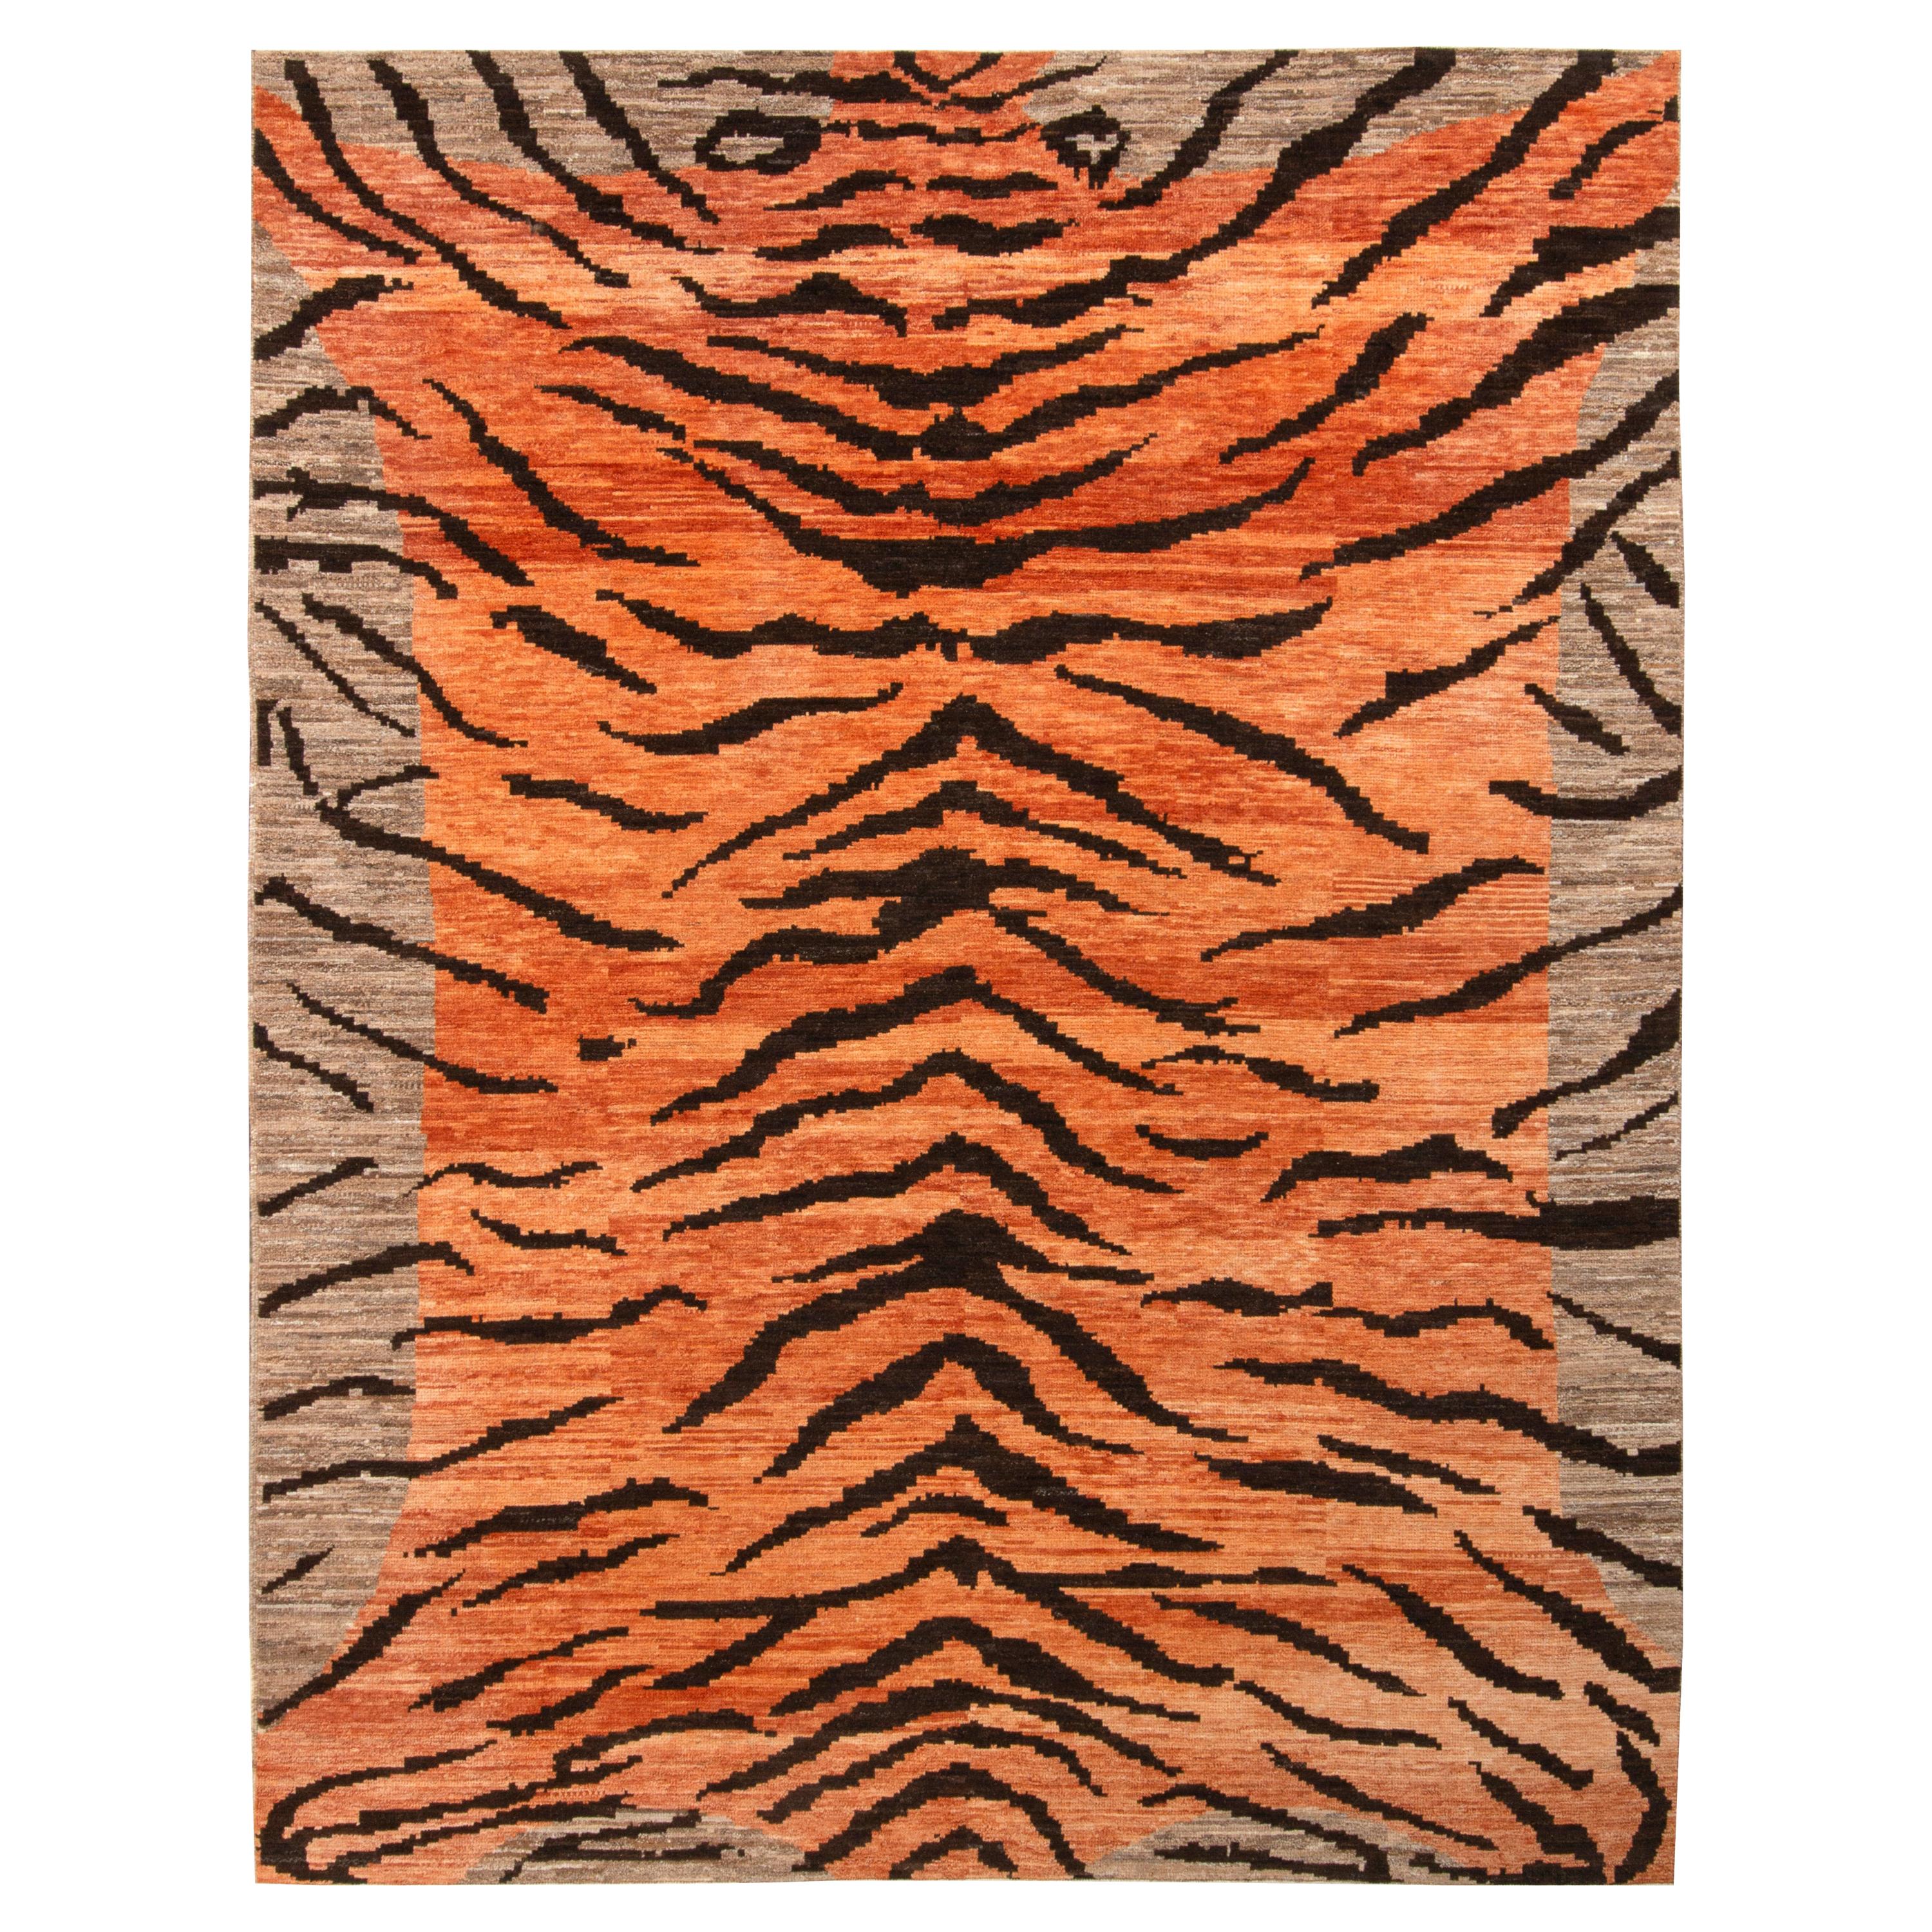 Tapis & Kilims Tiger Rug à motif de peau de tigre orange, beige-marron et noir